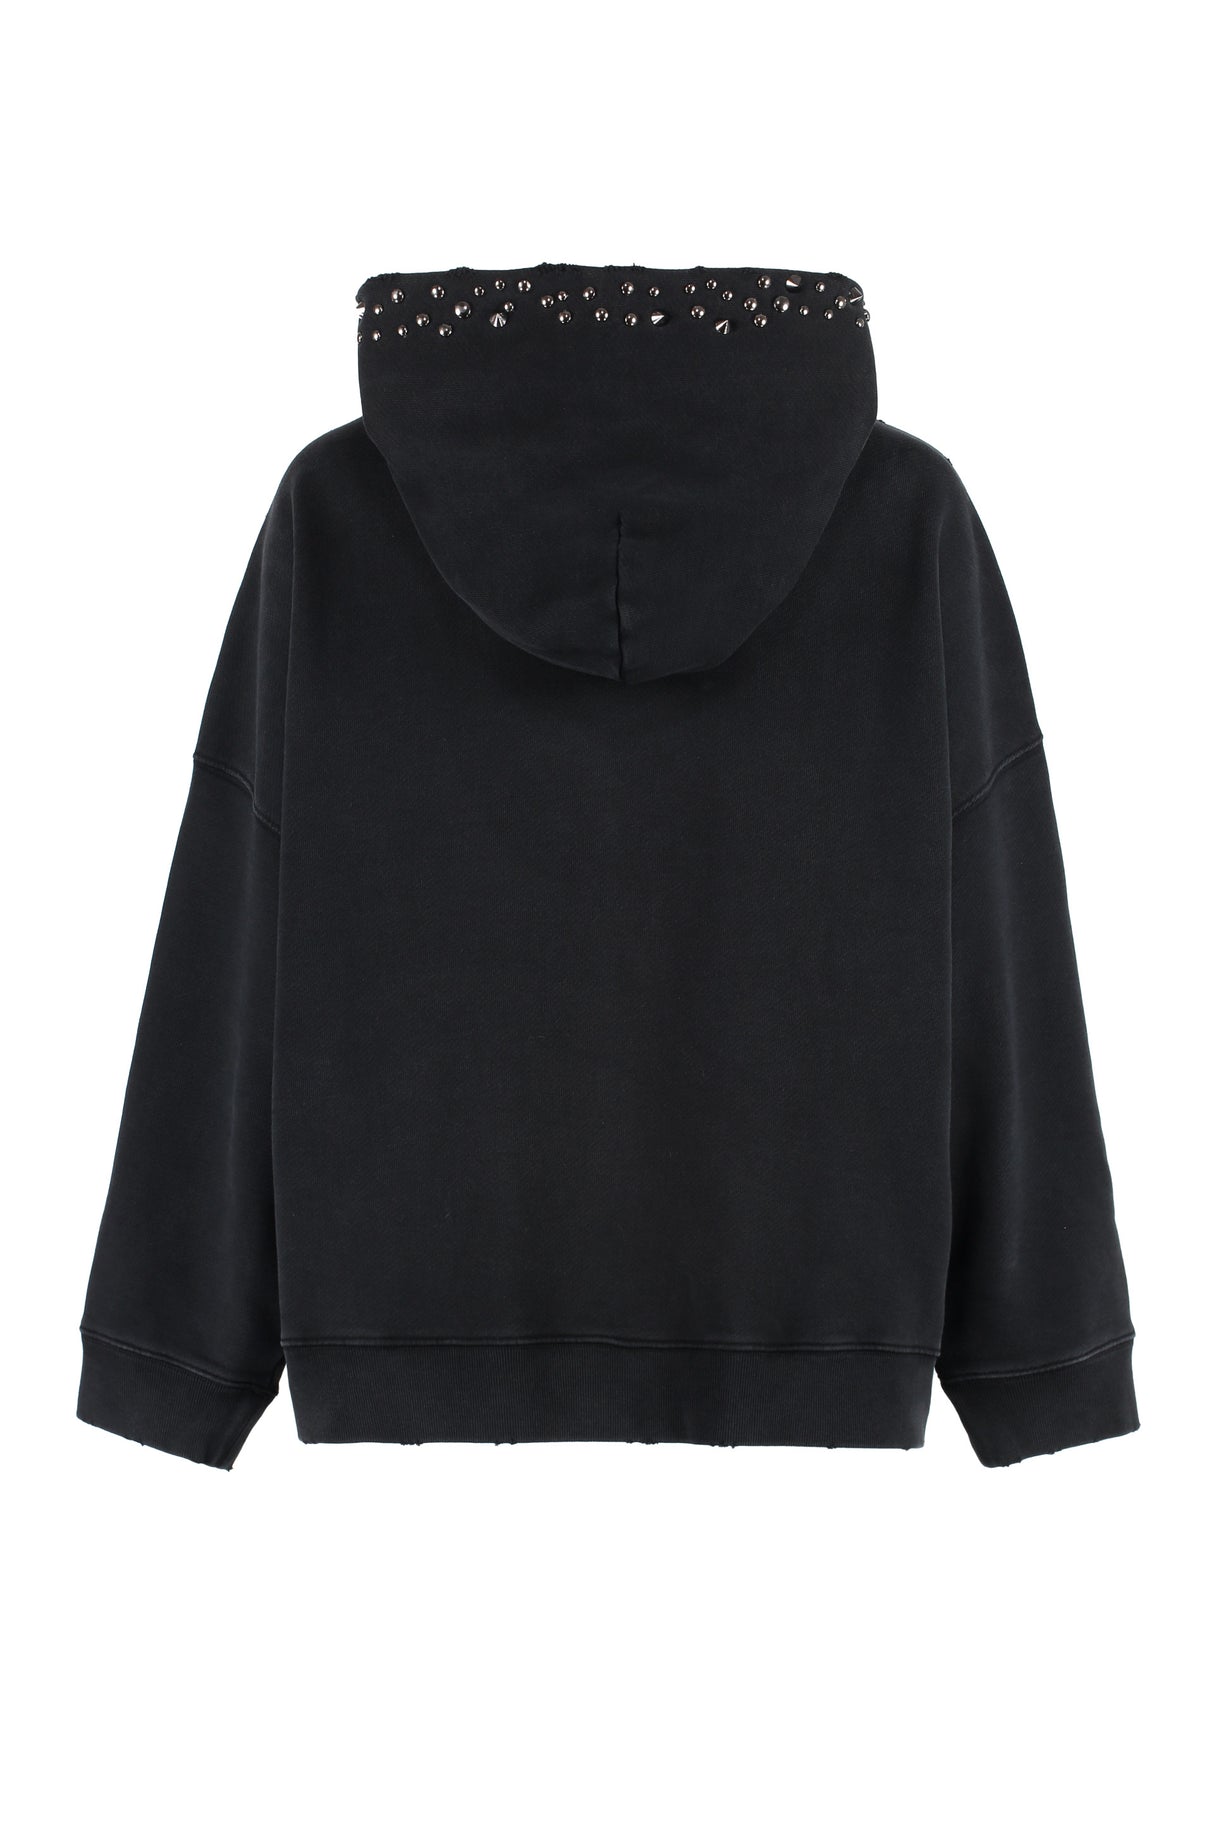 Áo hoodie Versace đen với các chỉ khâu kim loại trang trí và hiệu ứng cổ điển